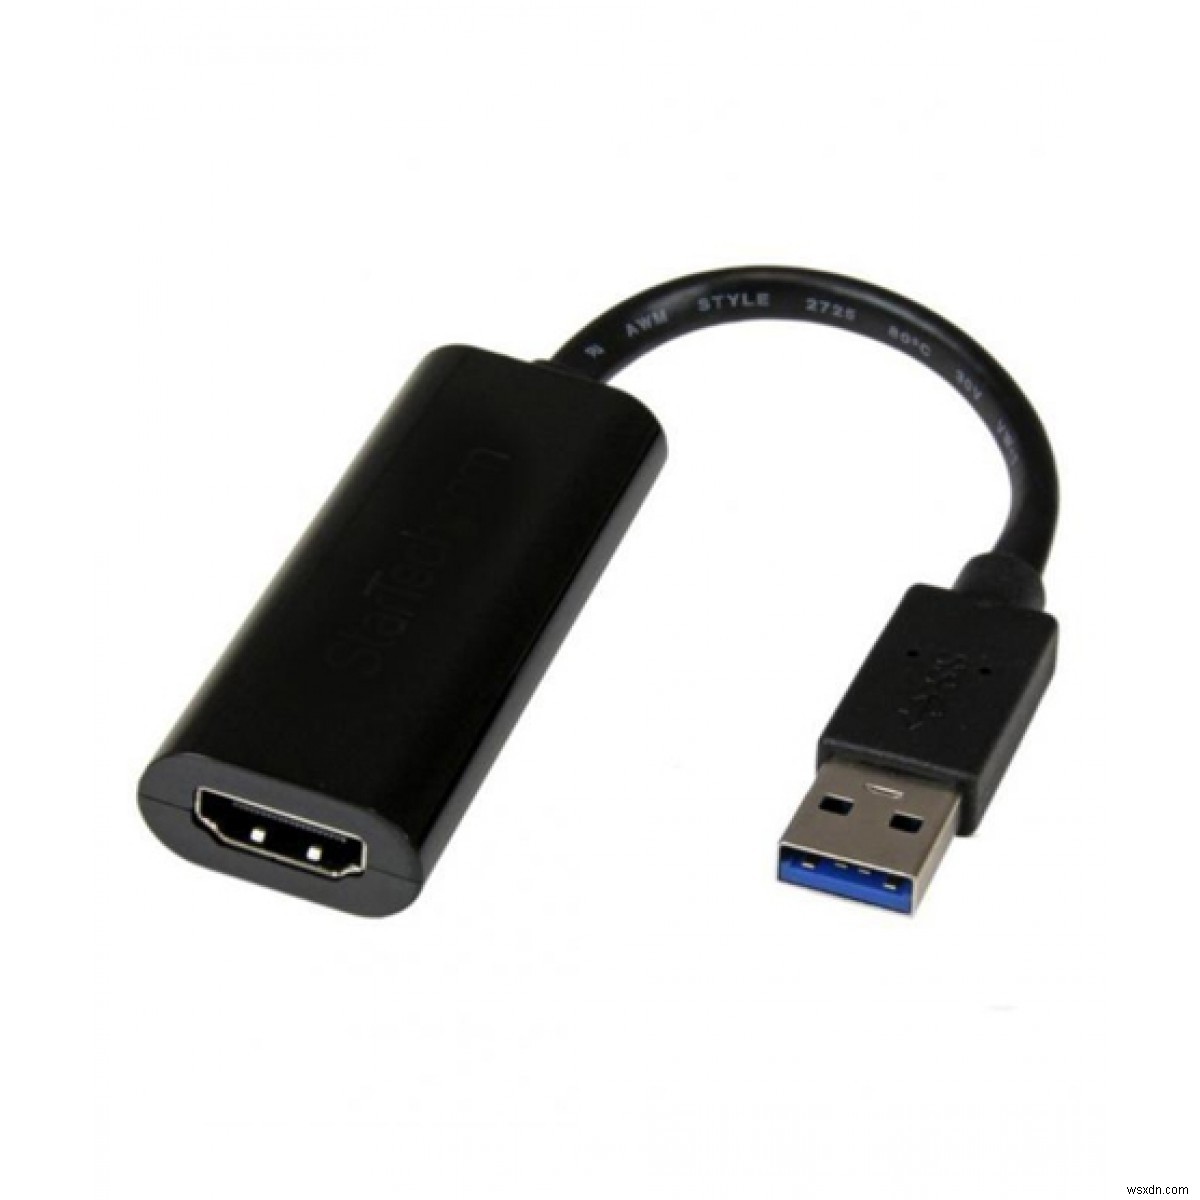 USB-HDMI 어댑터가 작동하지 않는 문제를 해결하는 방법 